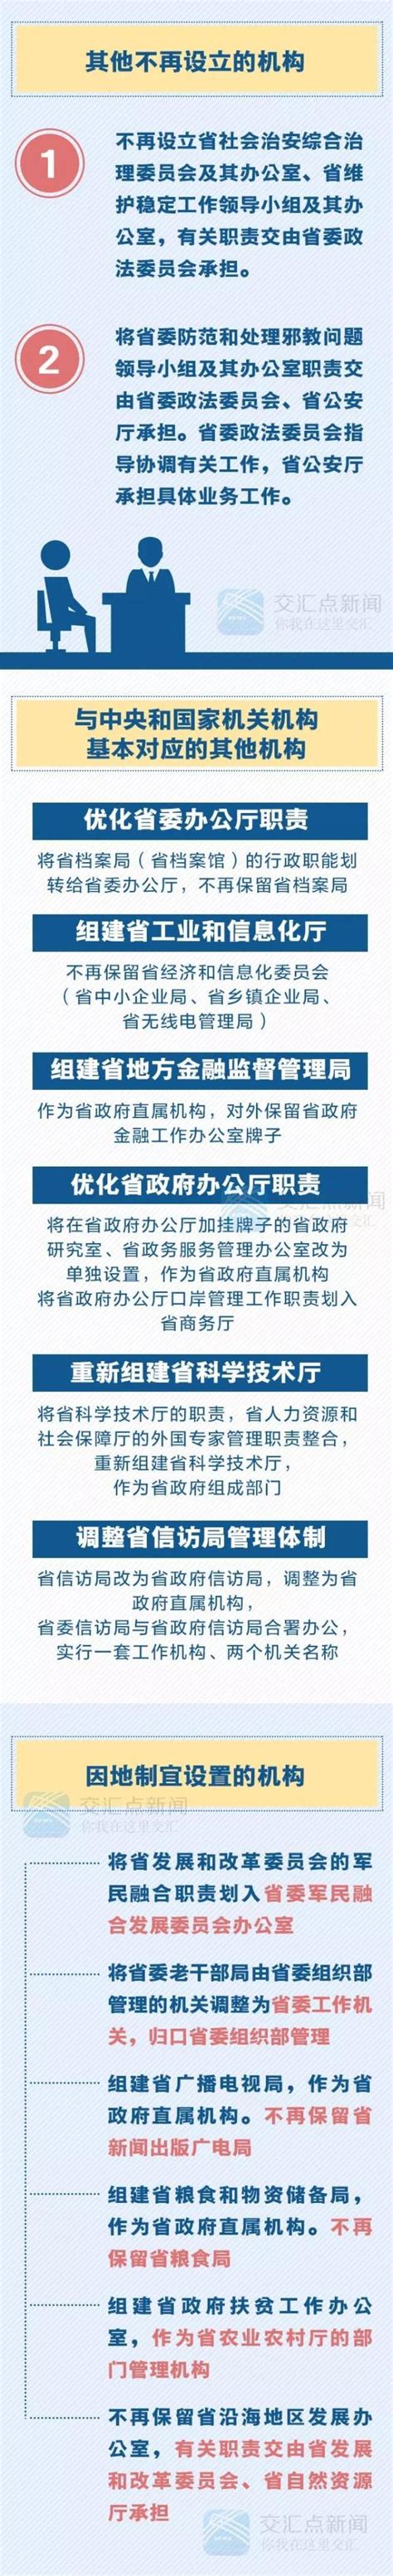 集团新闻 | 新闻动态 | 江苏省规划设计集团有限公司